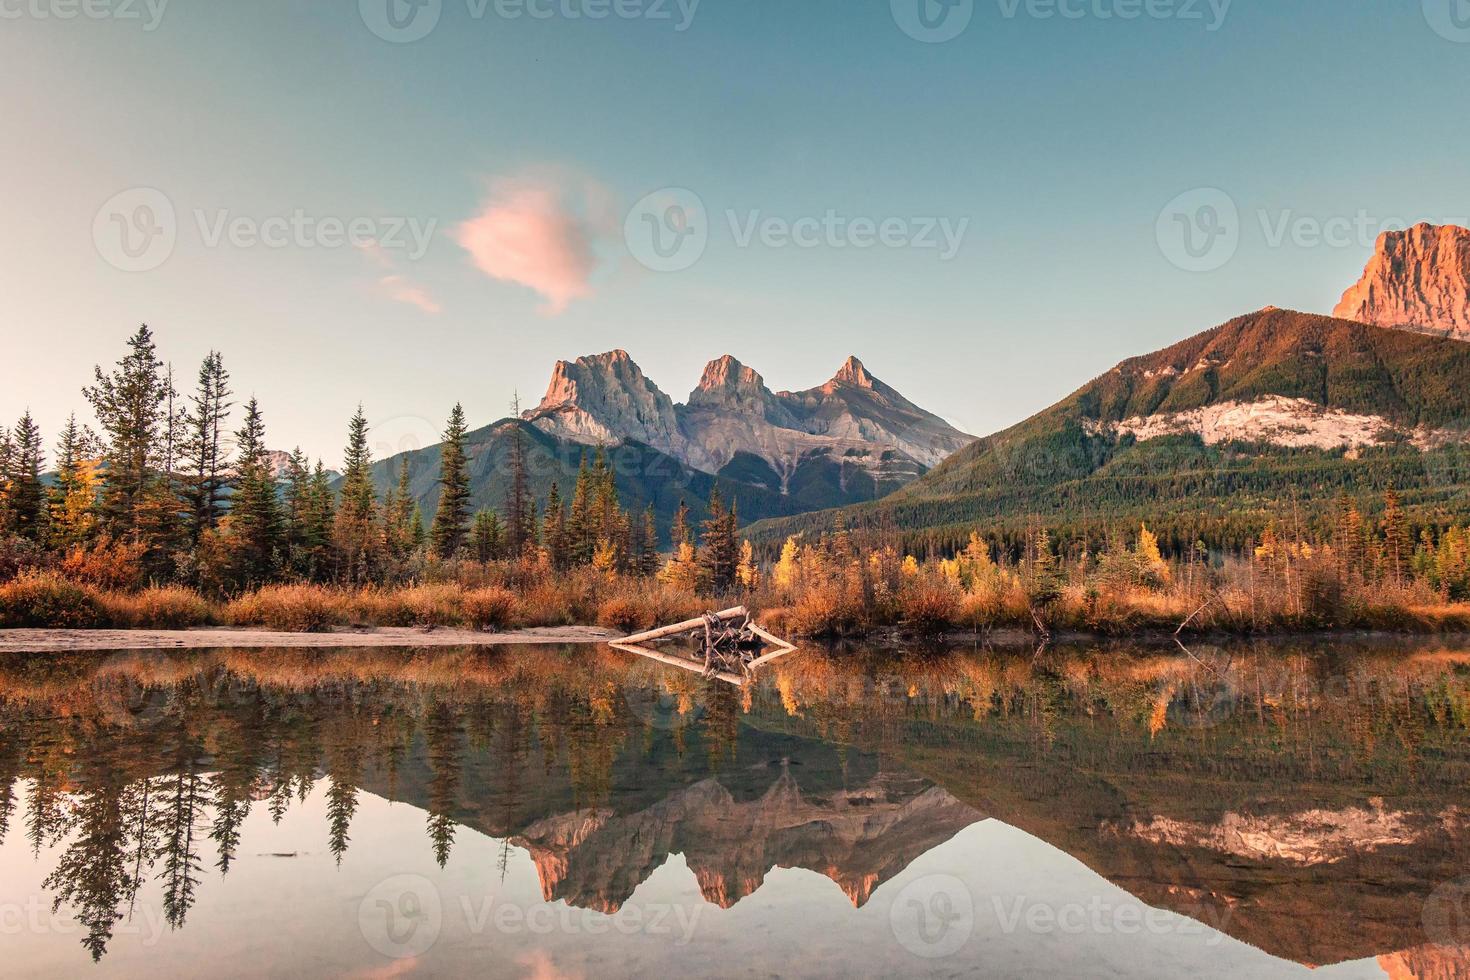 Trois soeurs montagnes de montagnes rocheuses réflexion sur la rivière Bow le matin à canmore, parc national banff photo